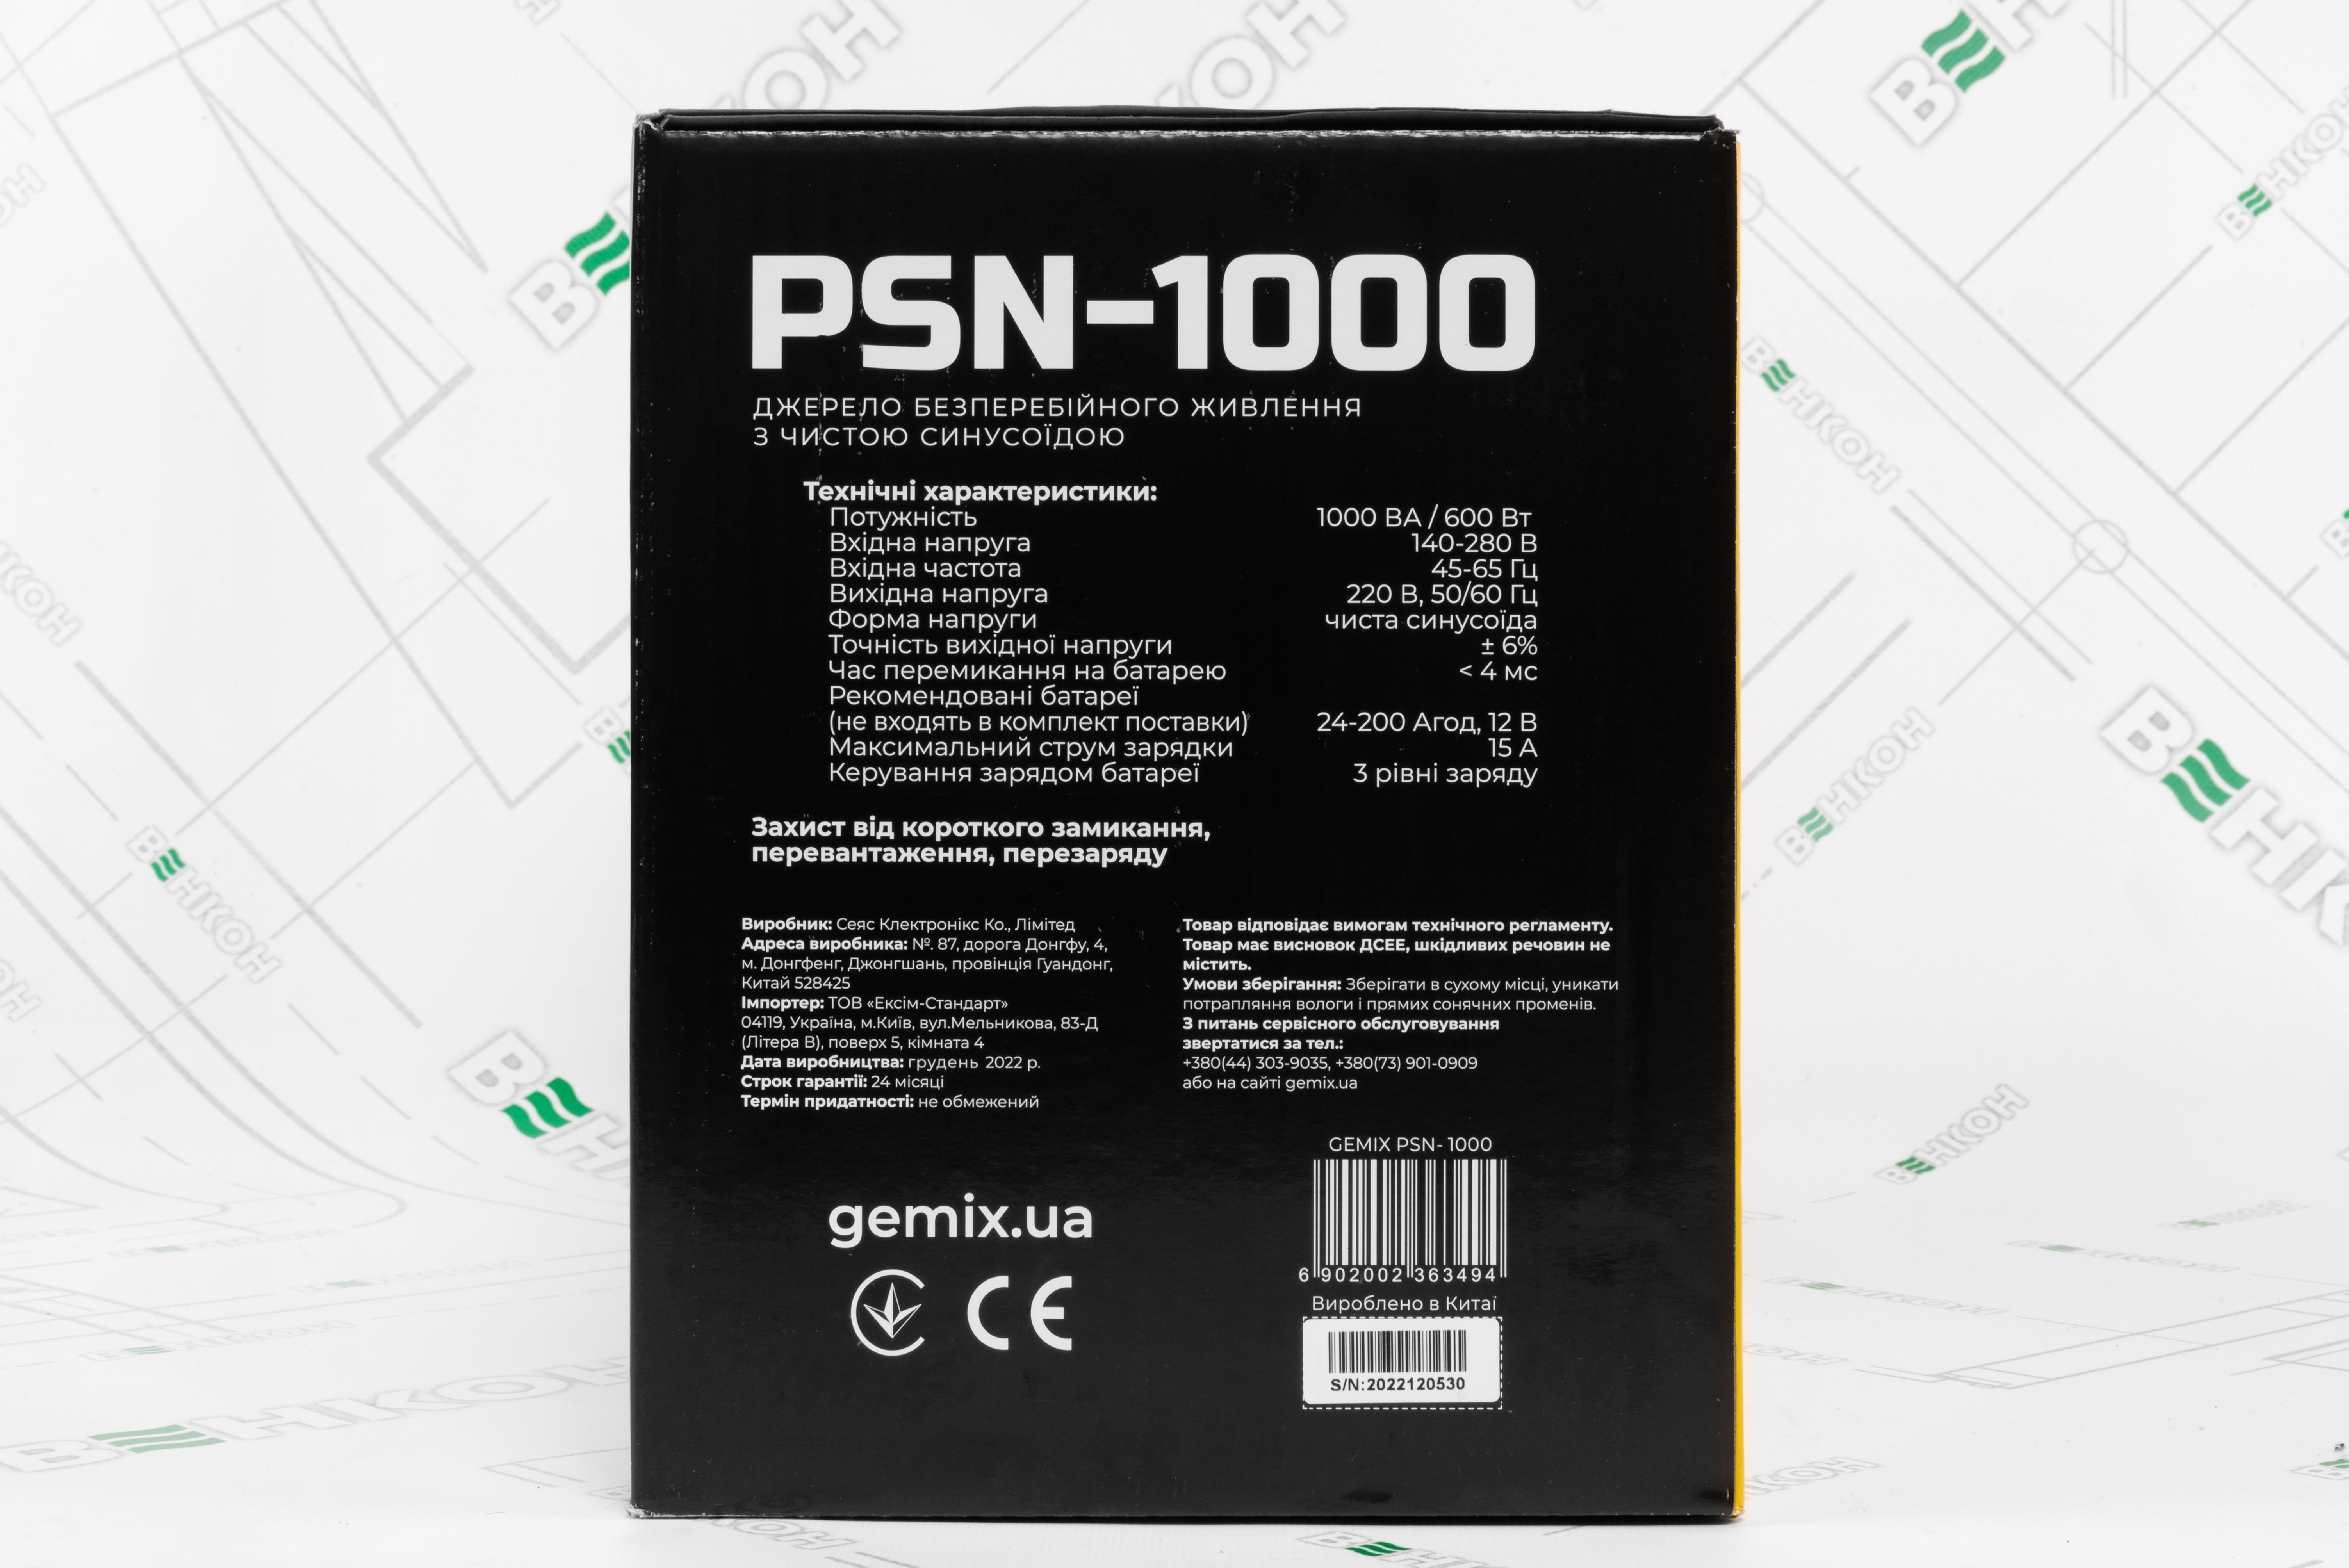 Джерело безперебійного живлення Gemix PSN-1000 огляд - фото 11